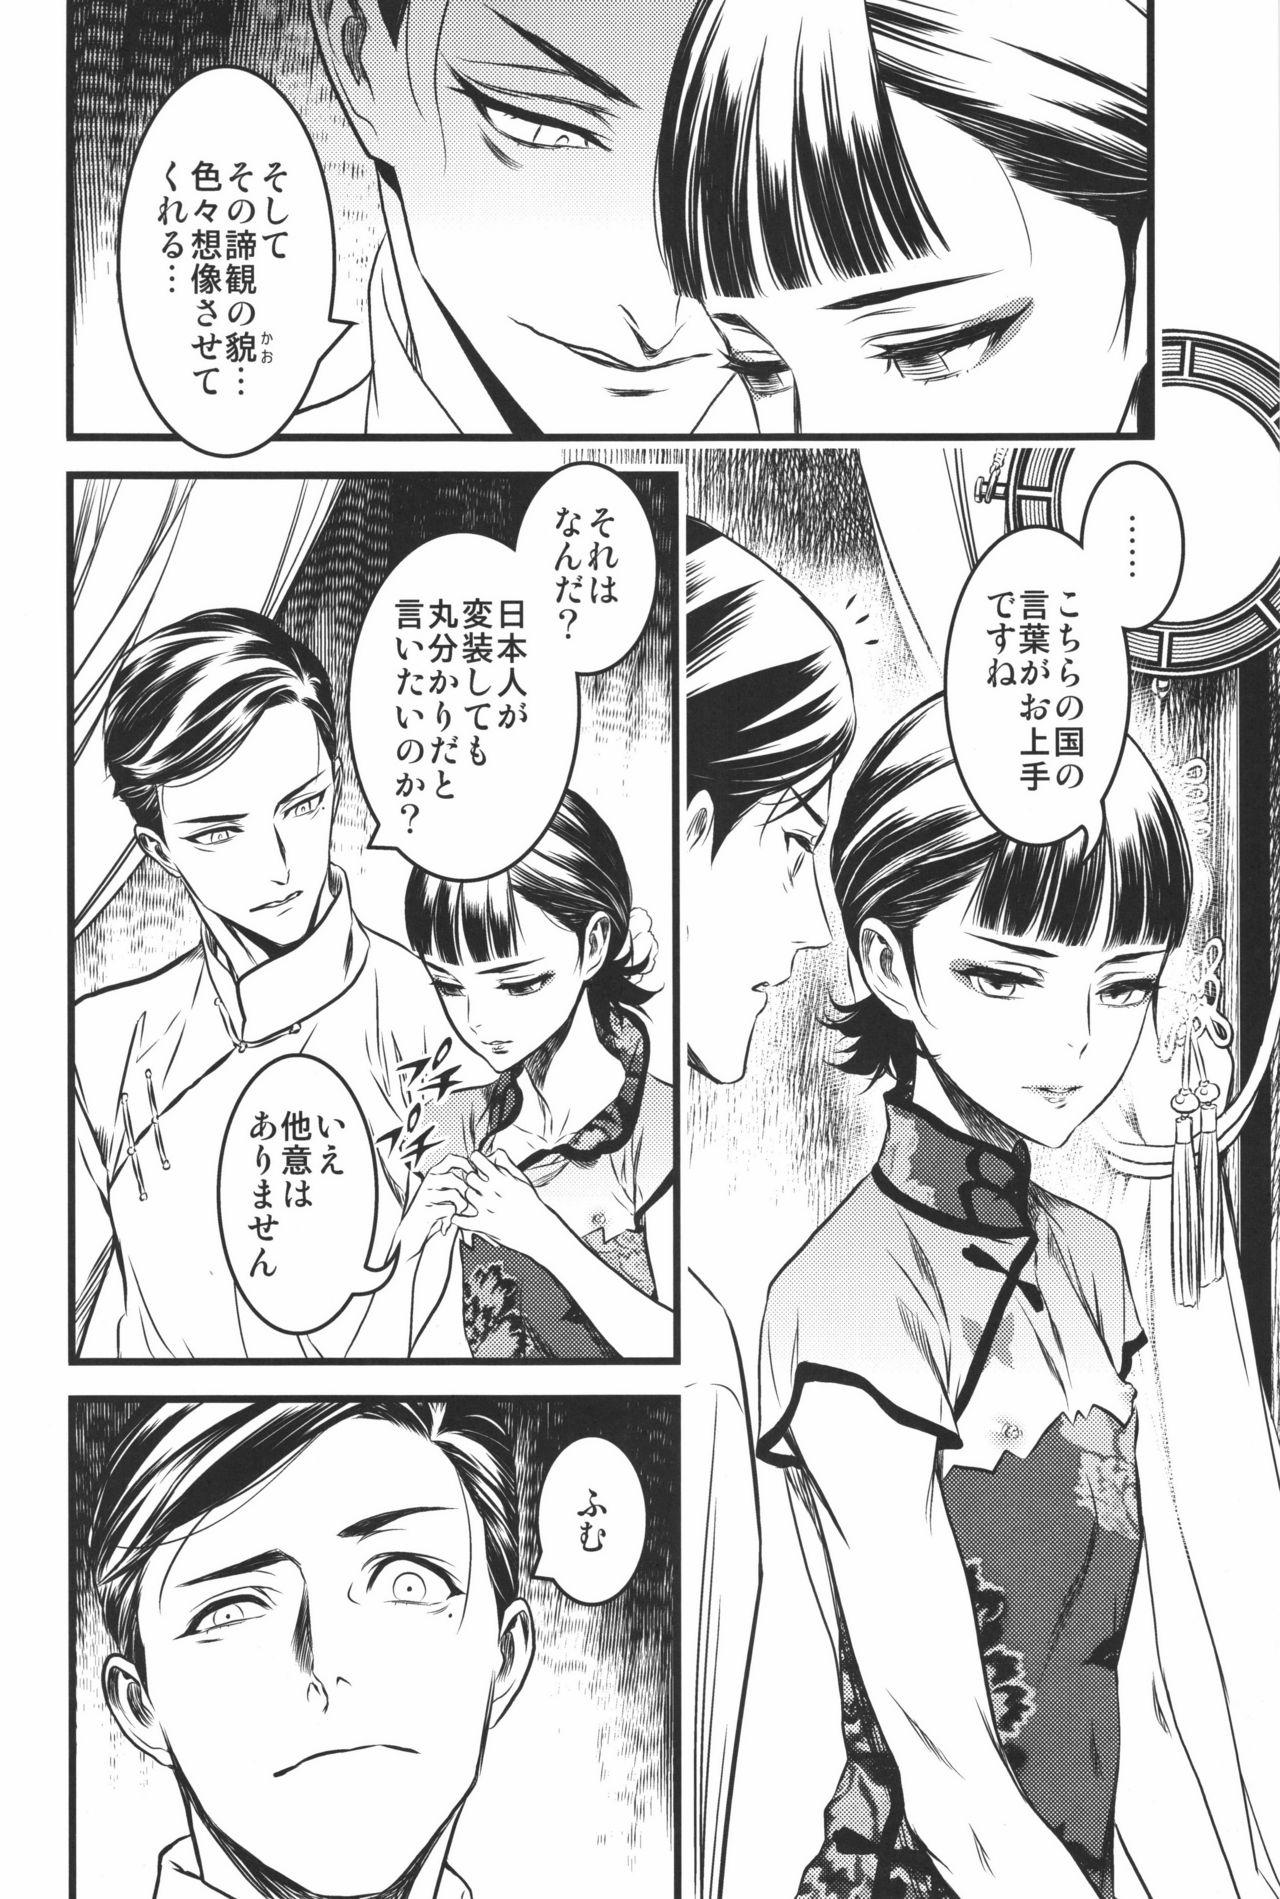 Perrito Mato Shanghai no Shonen - Joker game Infiel - Page 5